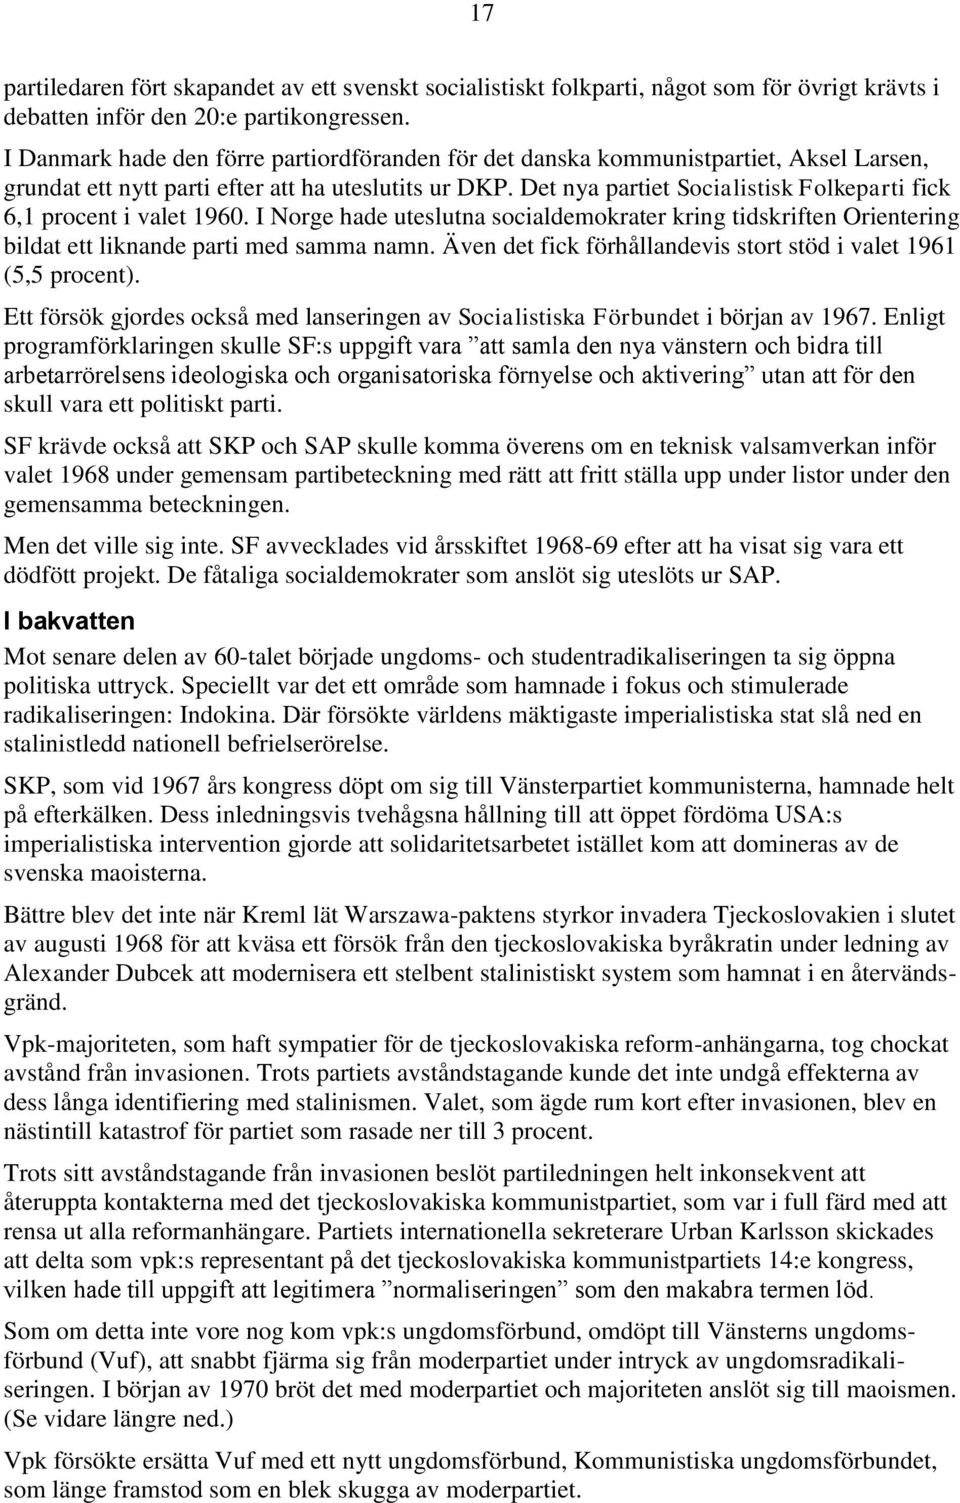 Det nya partiet Socialistisk Folkeparti fick 6,1 procent i valet 1960. I Norge hade uteslutna socialdemokrater kring tidskriften Orientering bildat ett liknande parti med samma namn.